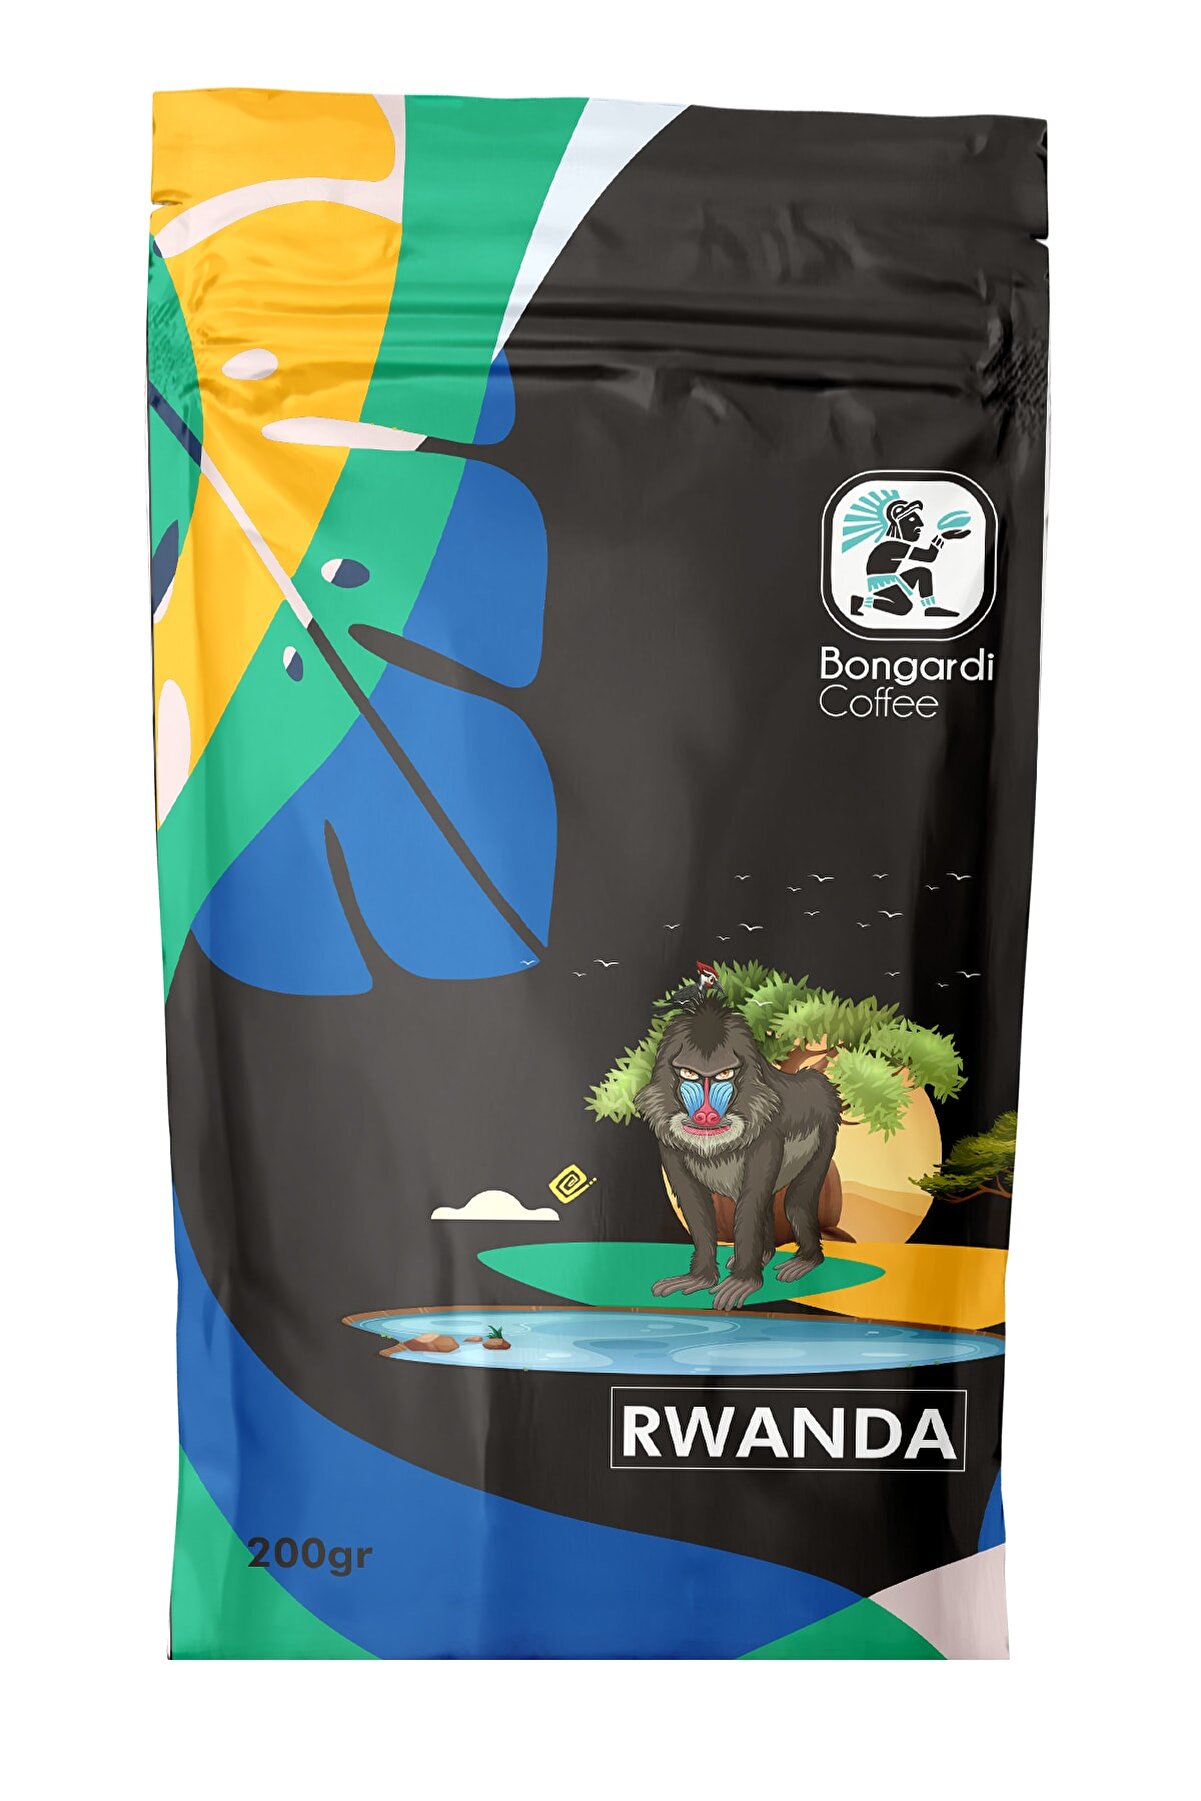 Bongardi Coffee 200 gr Ruanda Yöresel Filtre Kahve Makinesi Uyumlu